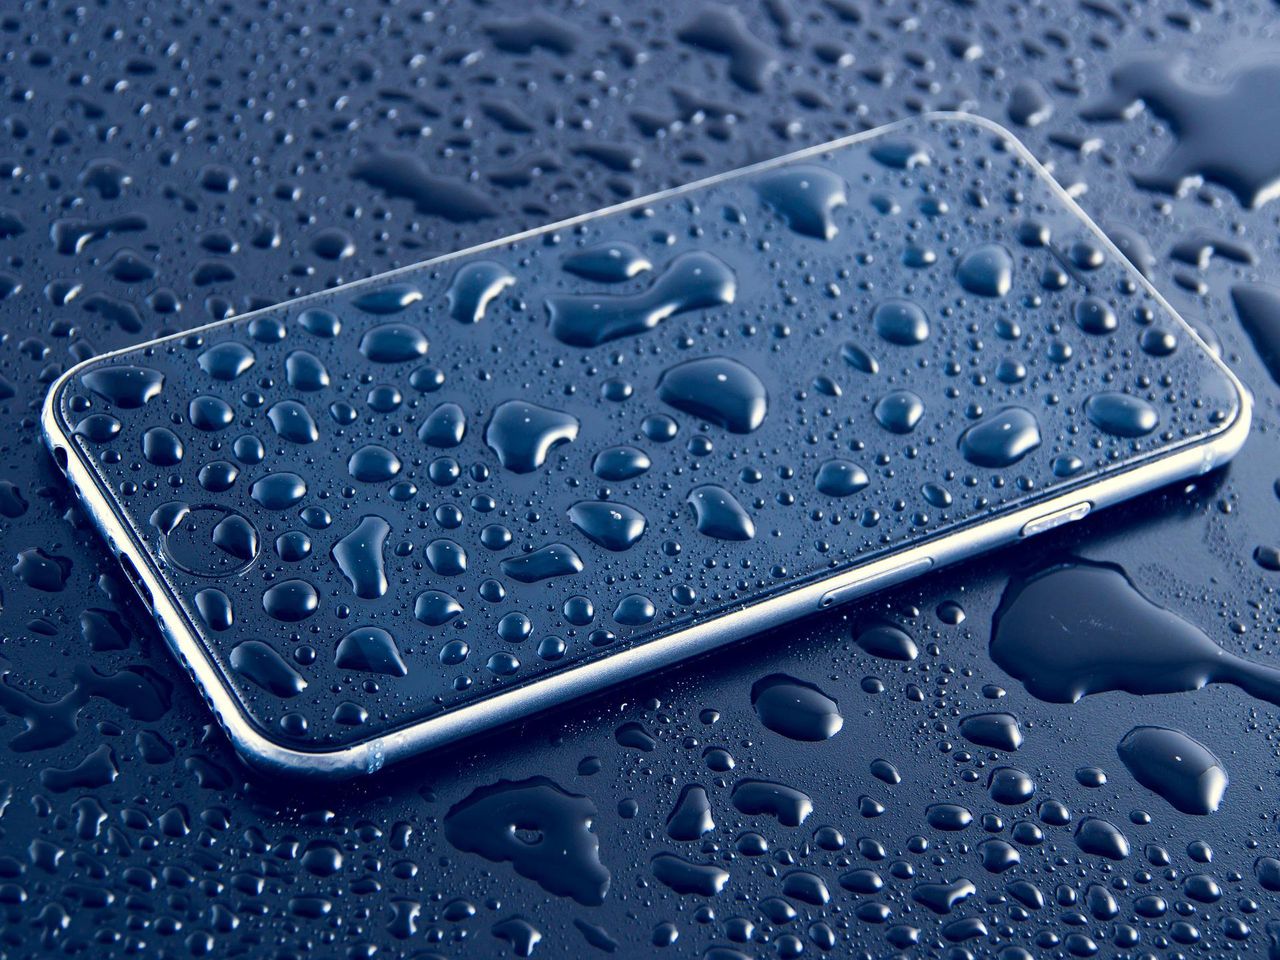 "Tryb mokry" w iPhone’ie. Czy nowe smartfony Apple będą robiły zdjęcia pod wodą?